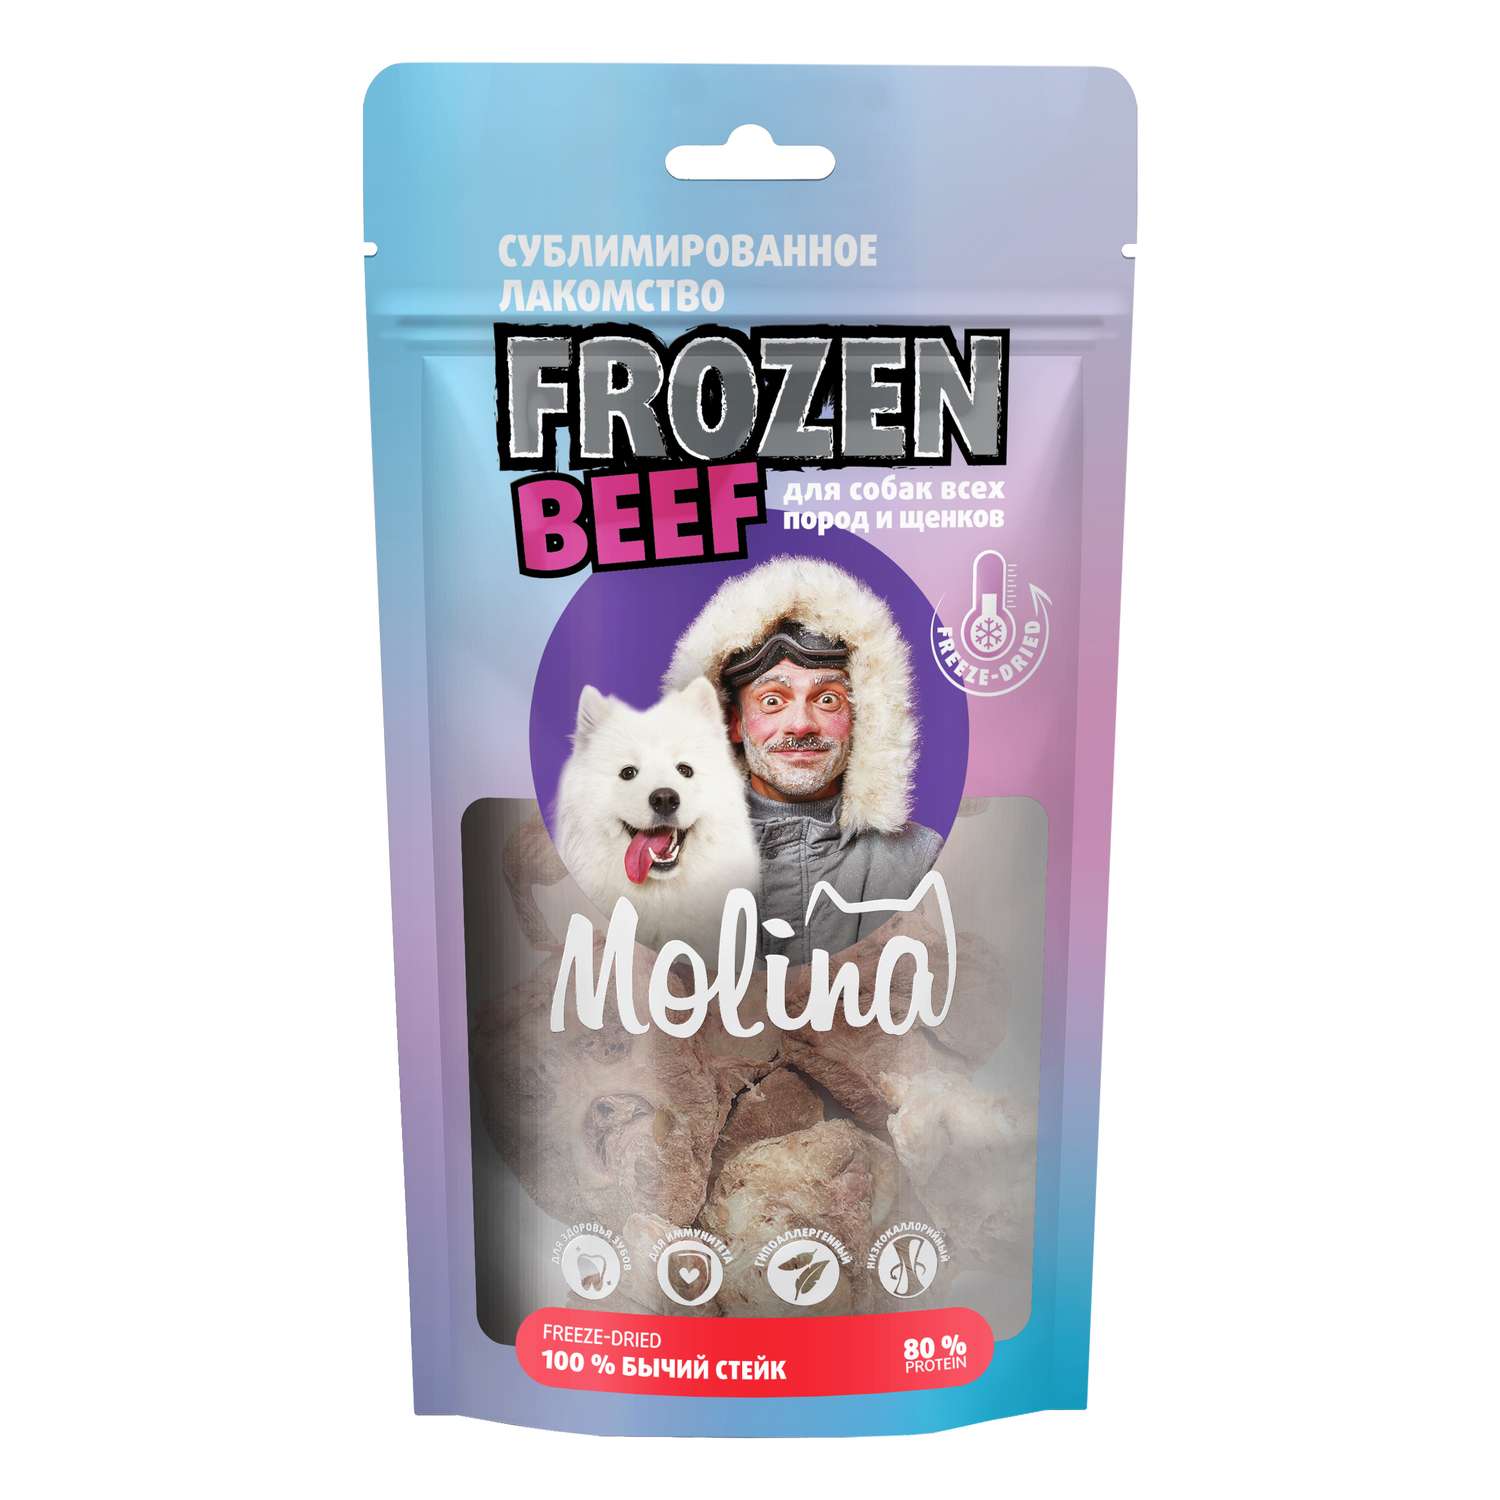 Лакомство для собак и щенков Molina 55г сублимированное бычий стейк - фото 1